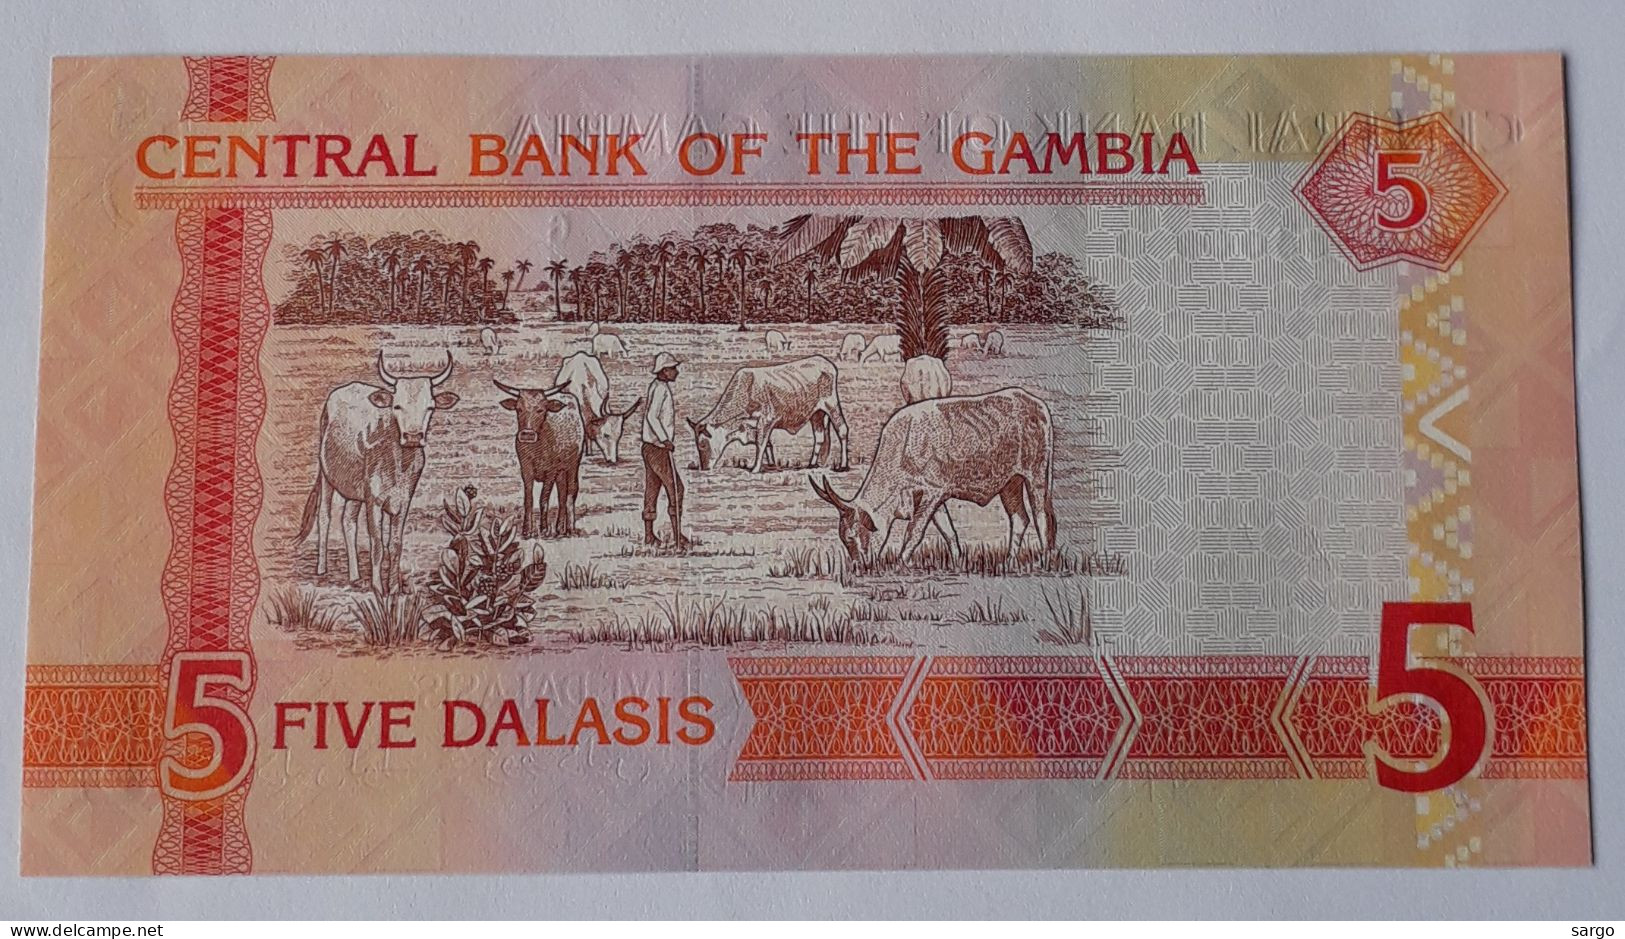 GAMBIA - 5 DALASIS -  P 255  (2013) - UNC - BANKNOTES - PAPER MONEY - - Gambia